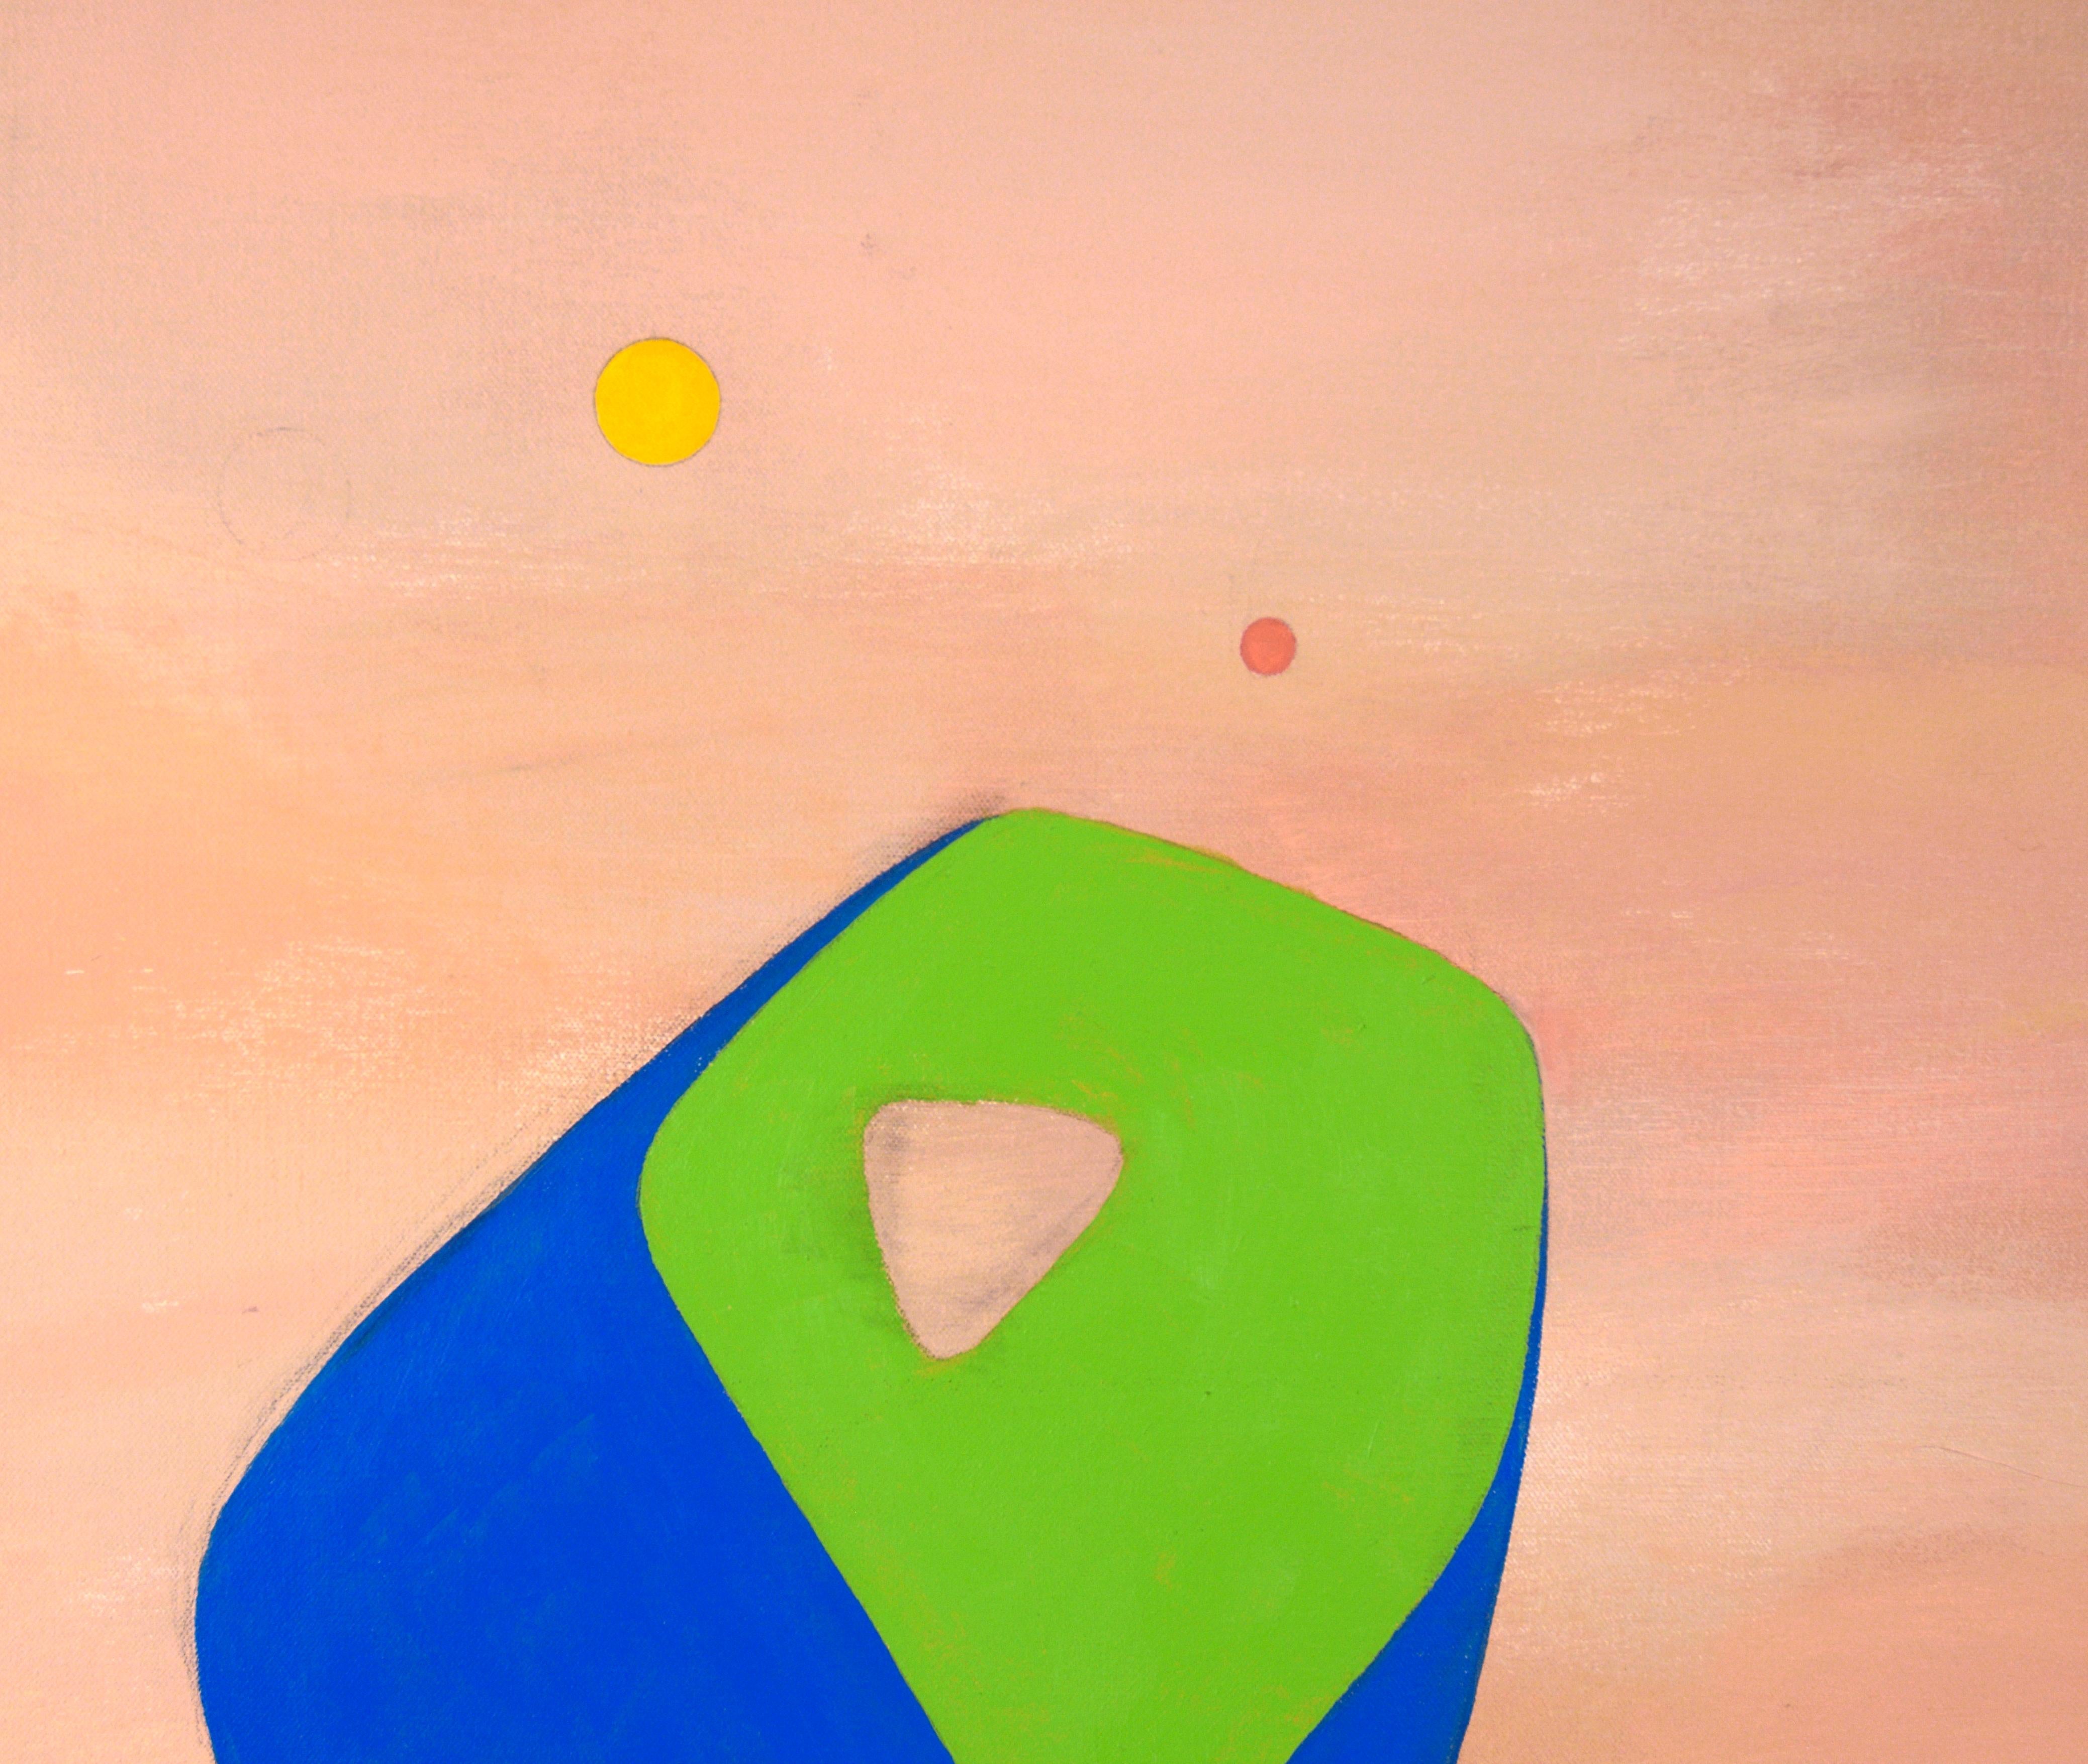 Colors flottants - Composition géométrique abstraite à l'huile sur toile - Géométrique abstrait Painting par Richard Turtletaub